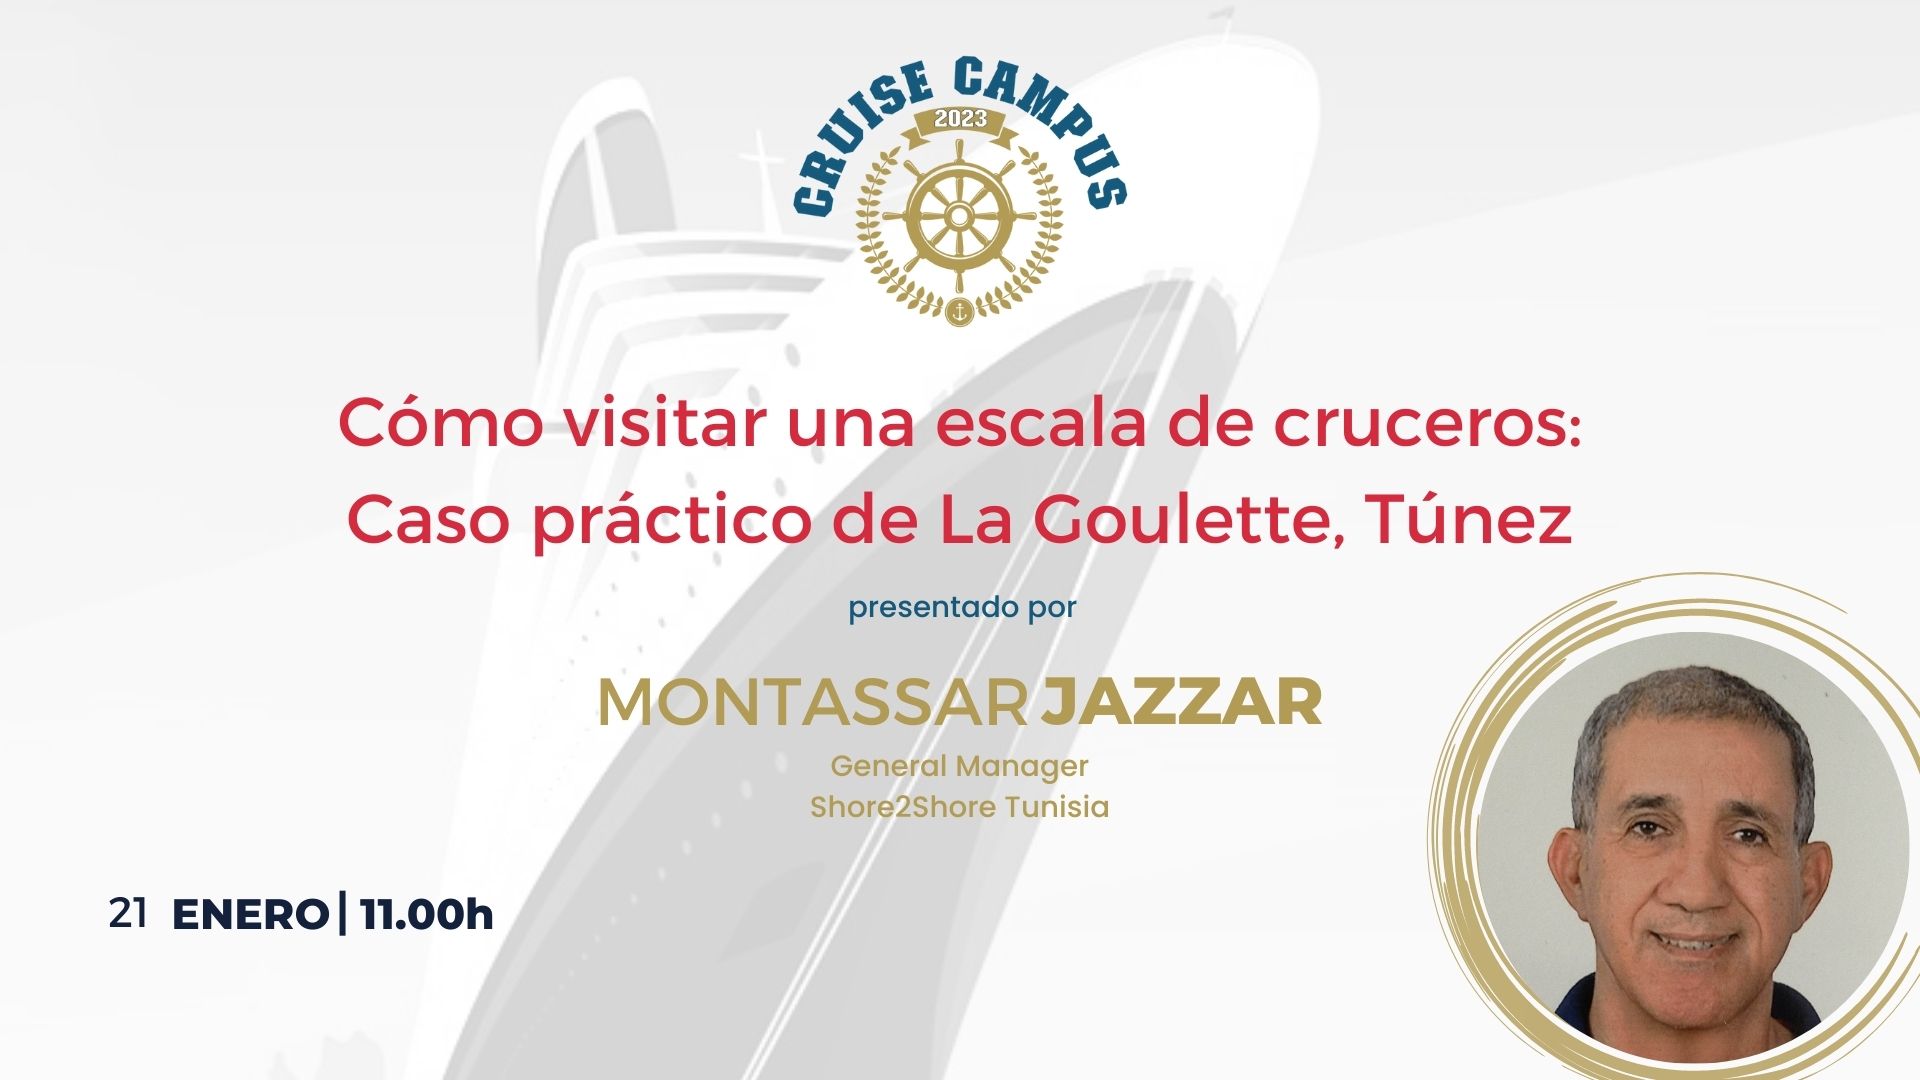 Montassar Jazzar - Cómo visitar una escala de cruceros: Caso práctico de La Goulette, Túnez